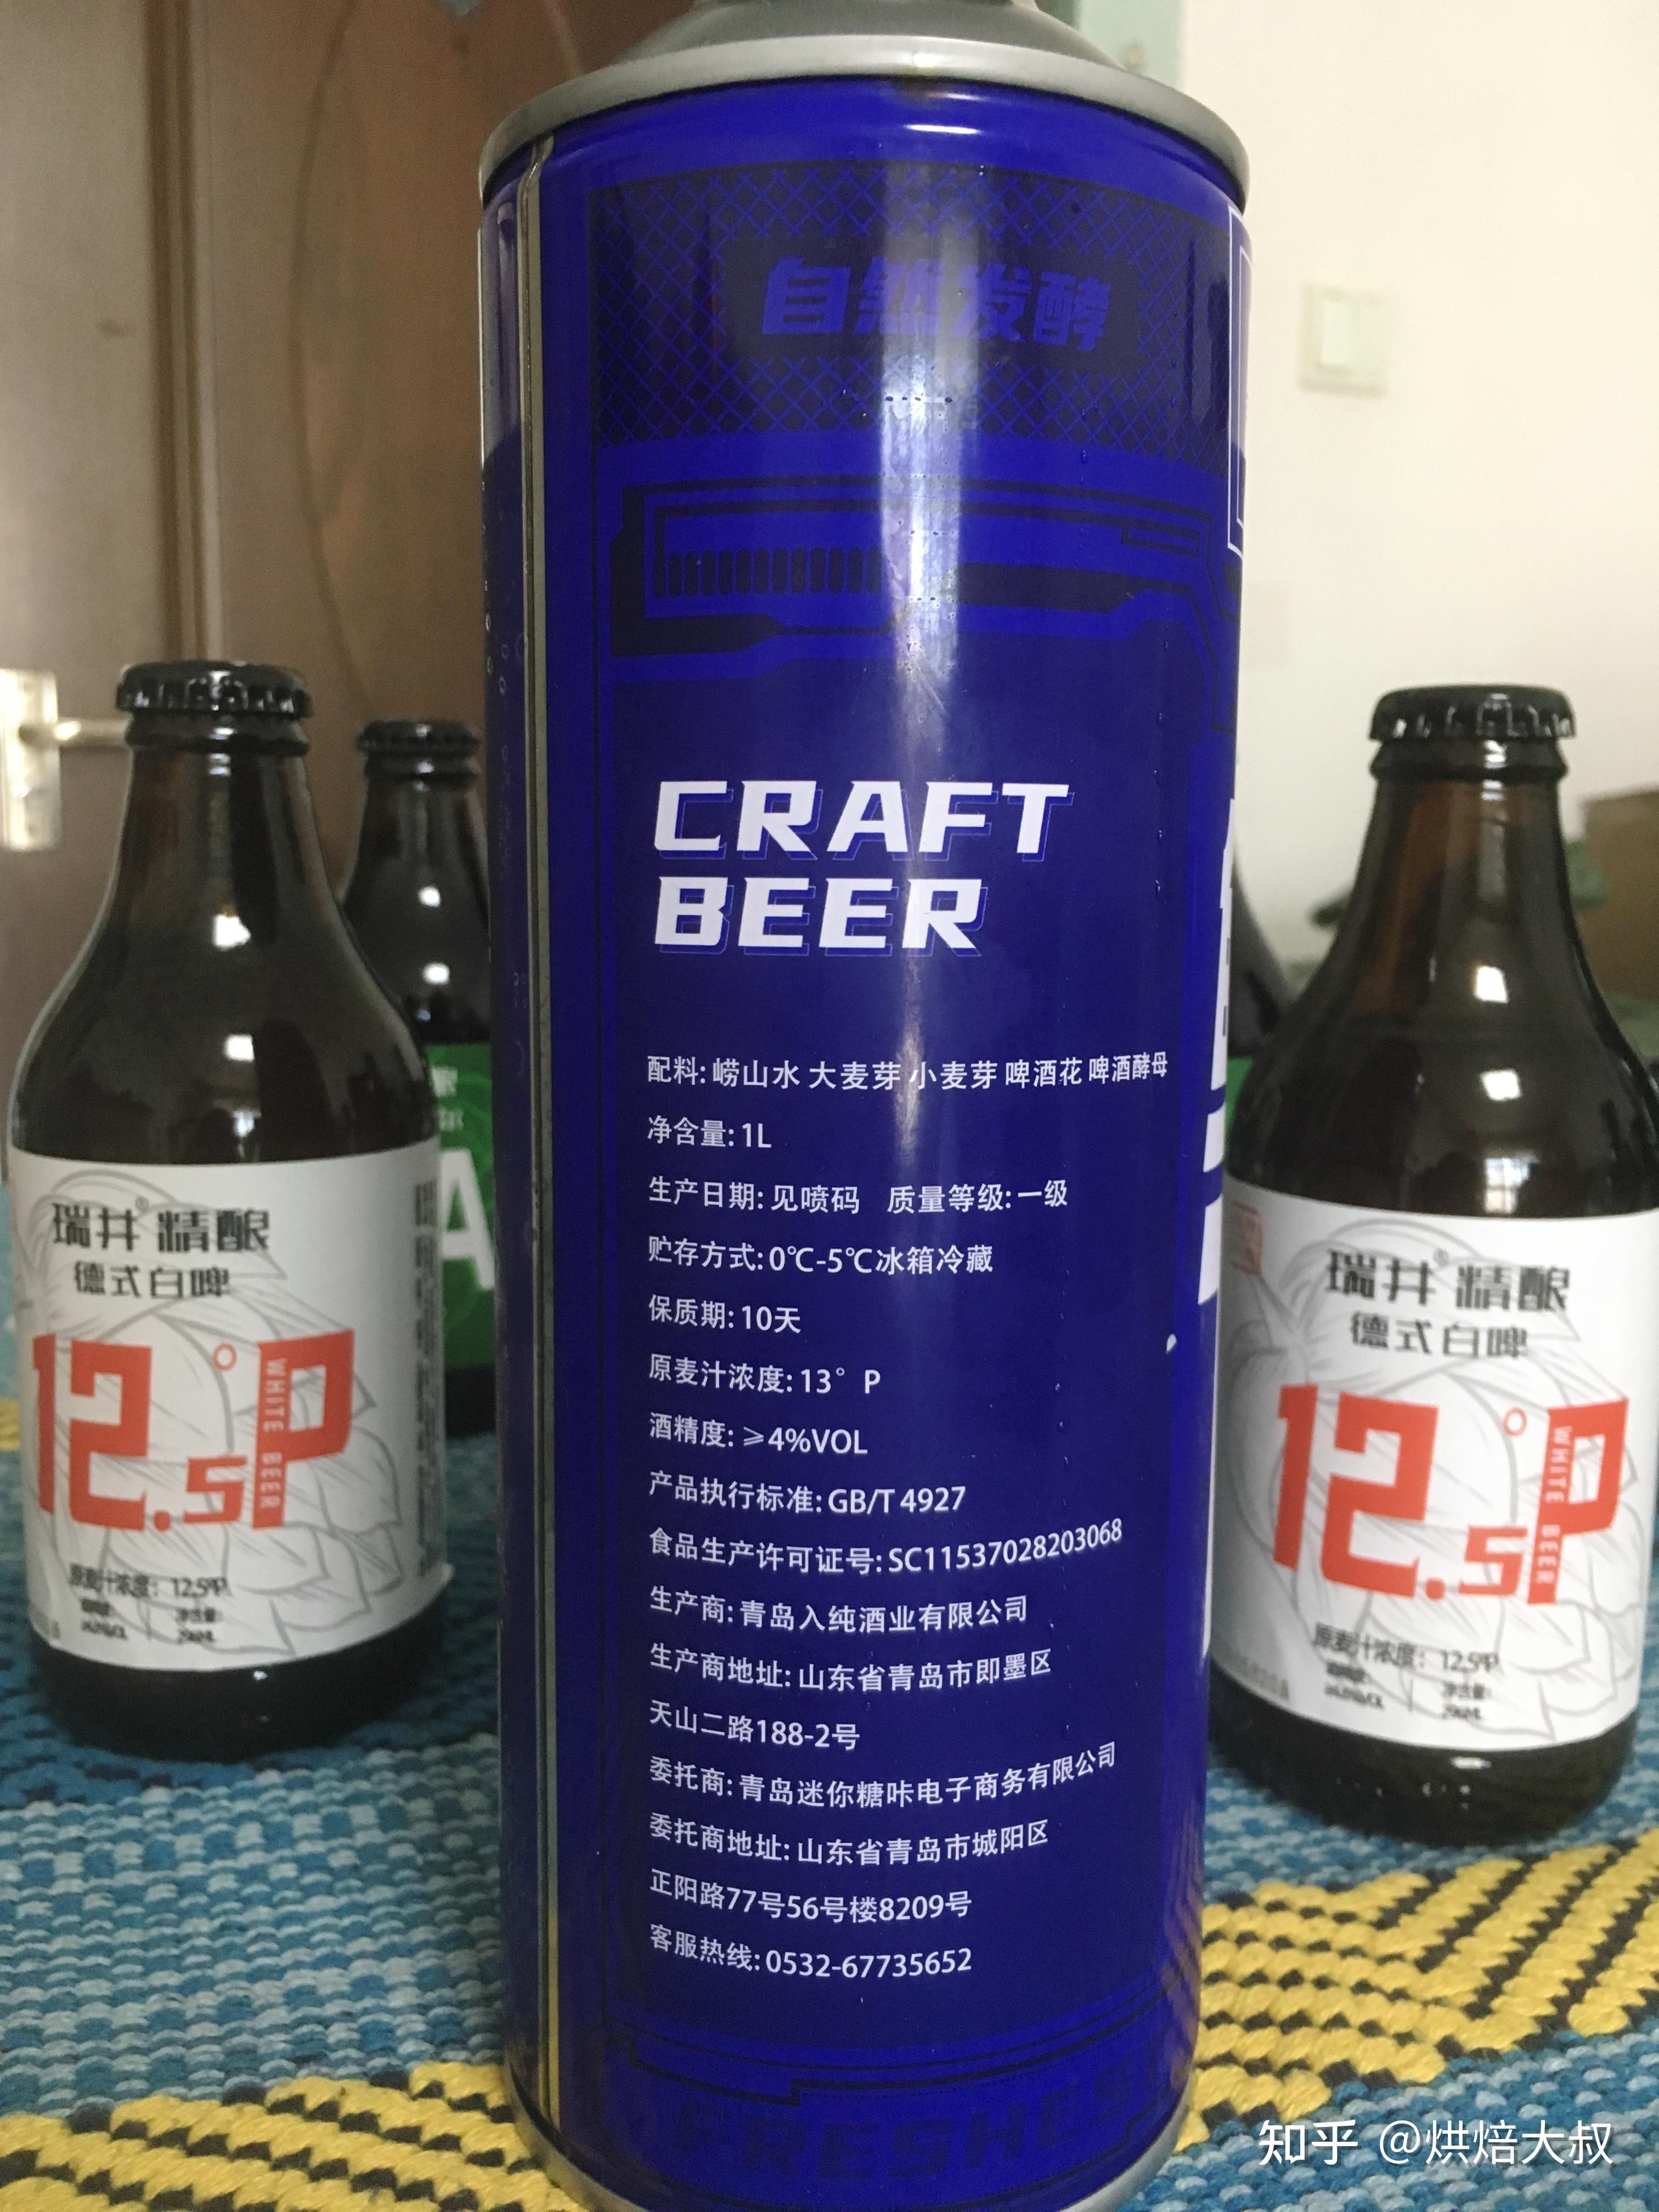 蜜雪冰城开设精酿啤酒品牌福鹿家 - 电商报